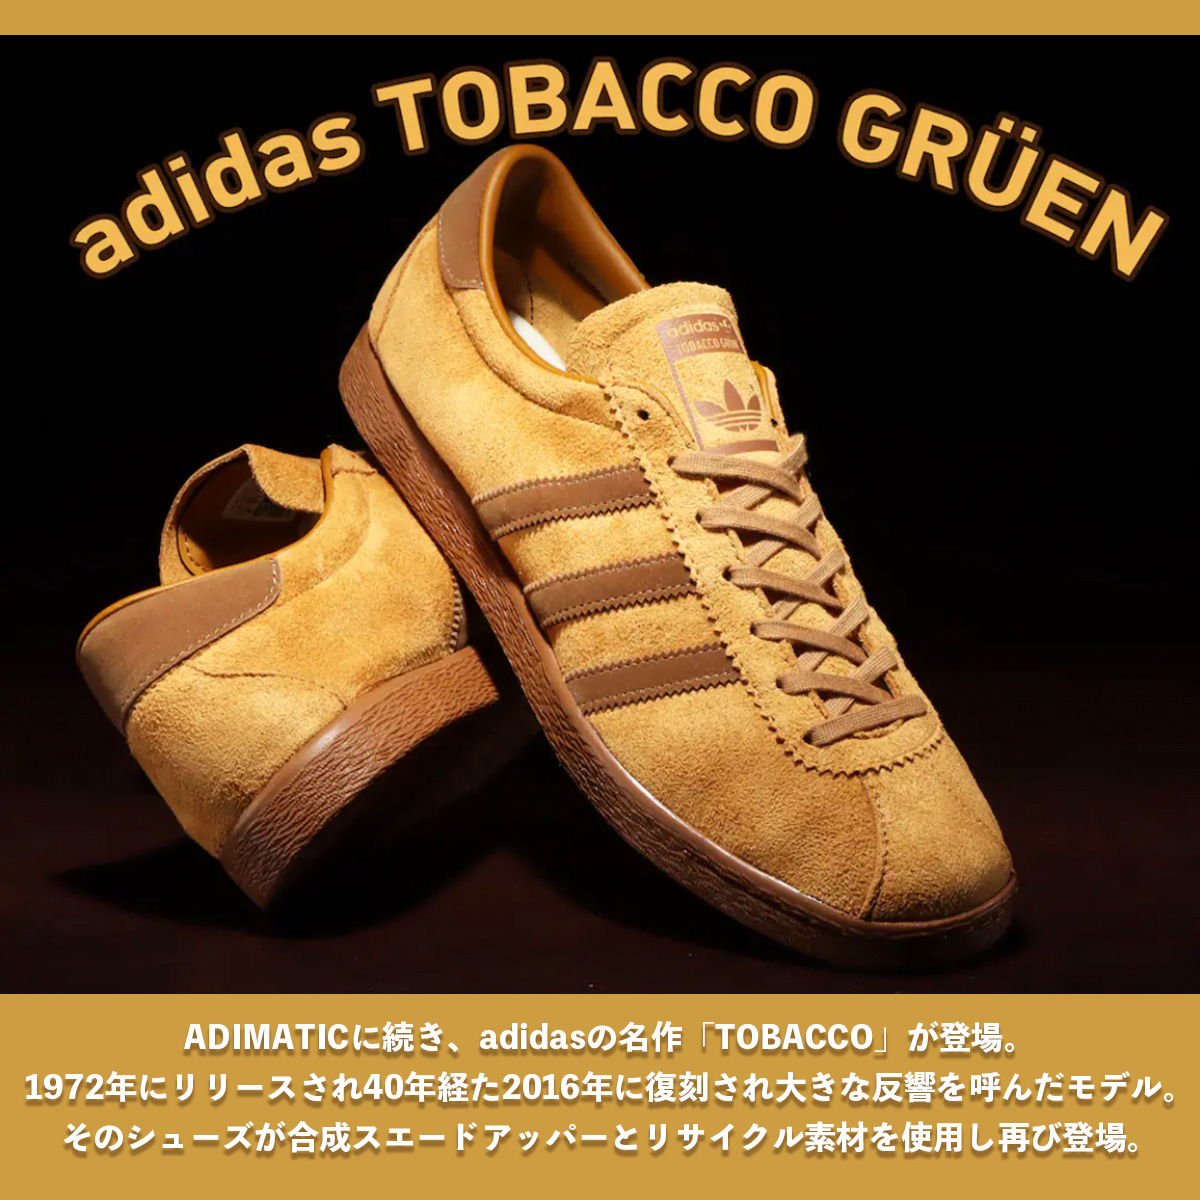 ♪新品27.5cm adidas tobacco gruenタバコ♪-